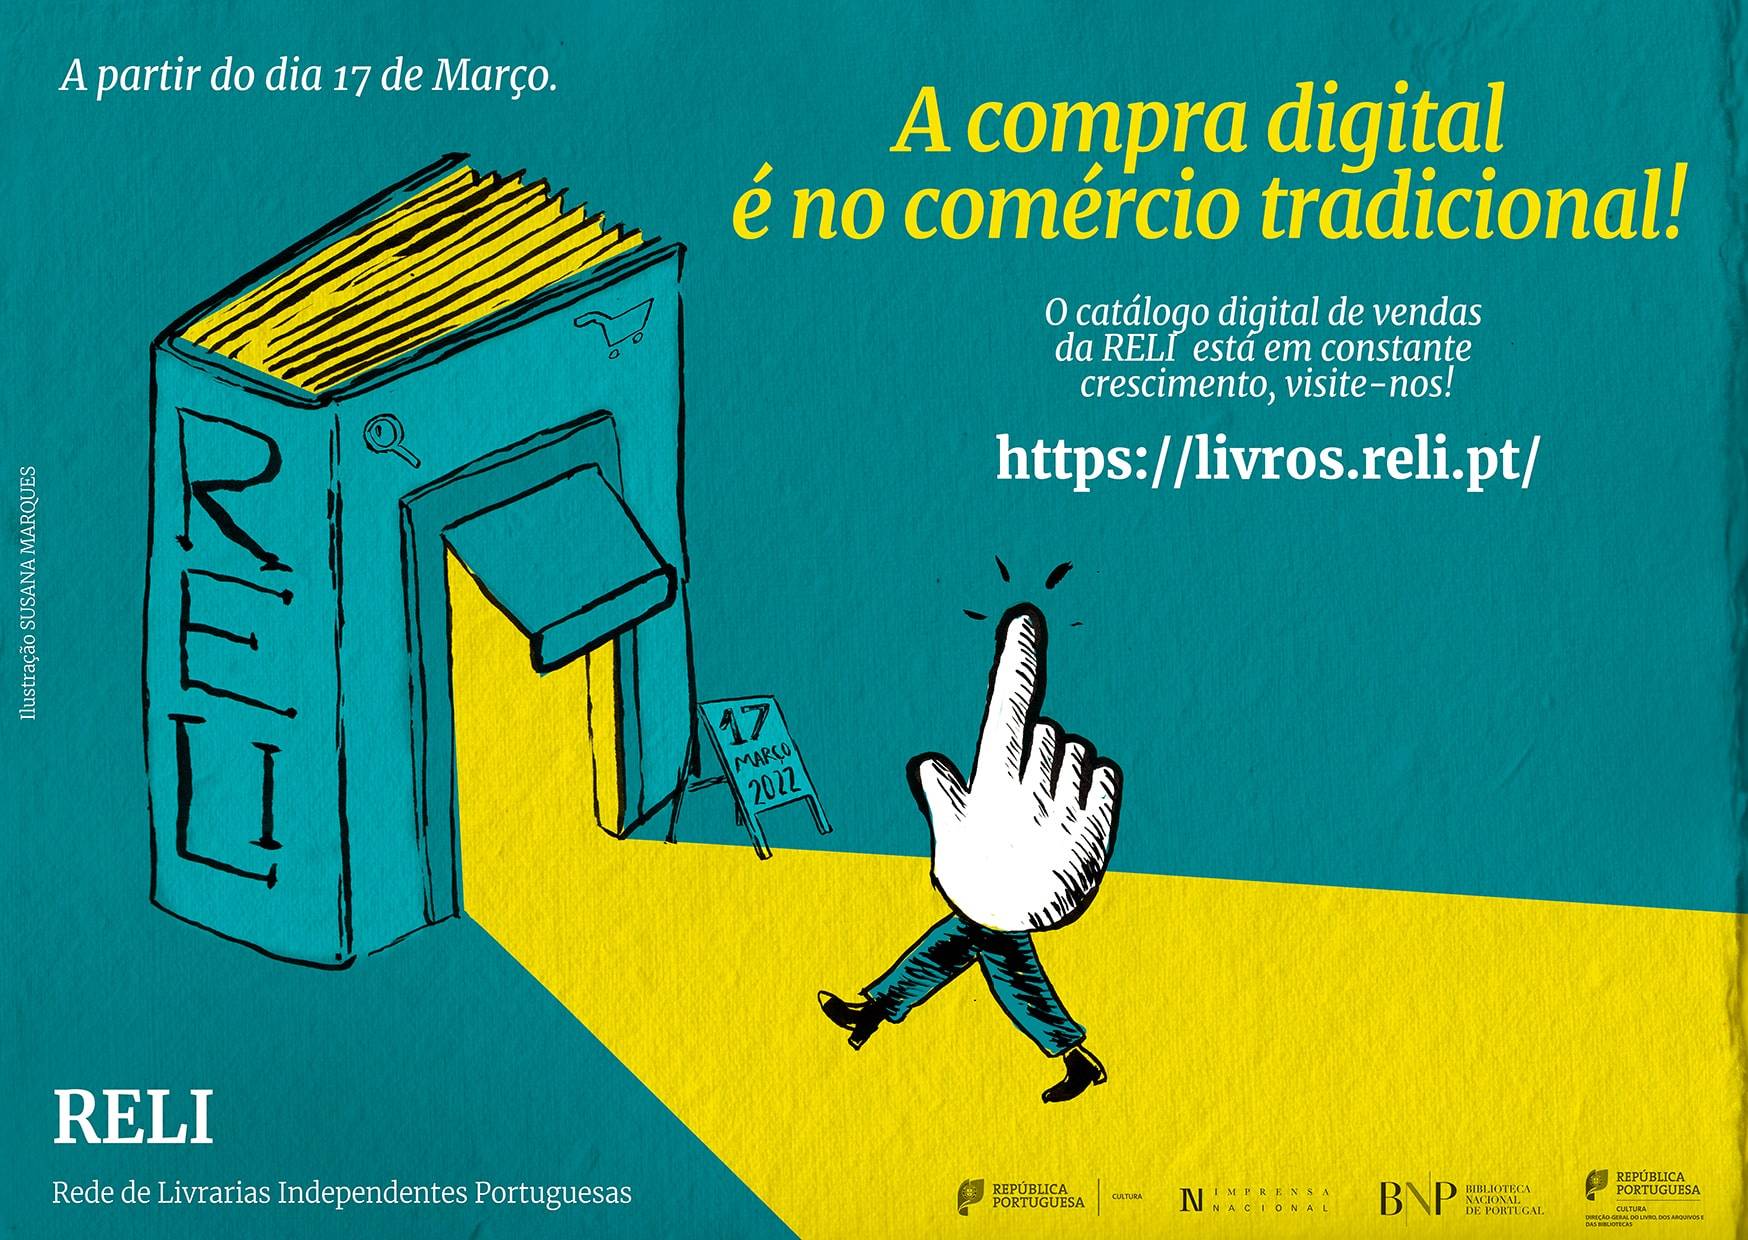 Rede de Livrarias Independentes lança plataforma digital de vendas, com o apoio da Imprensa Nacional